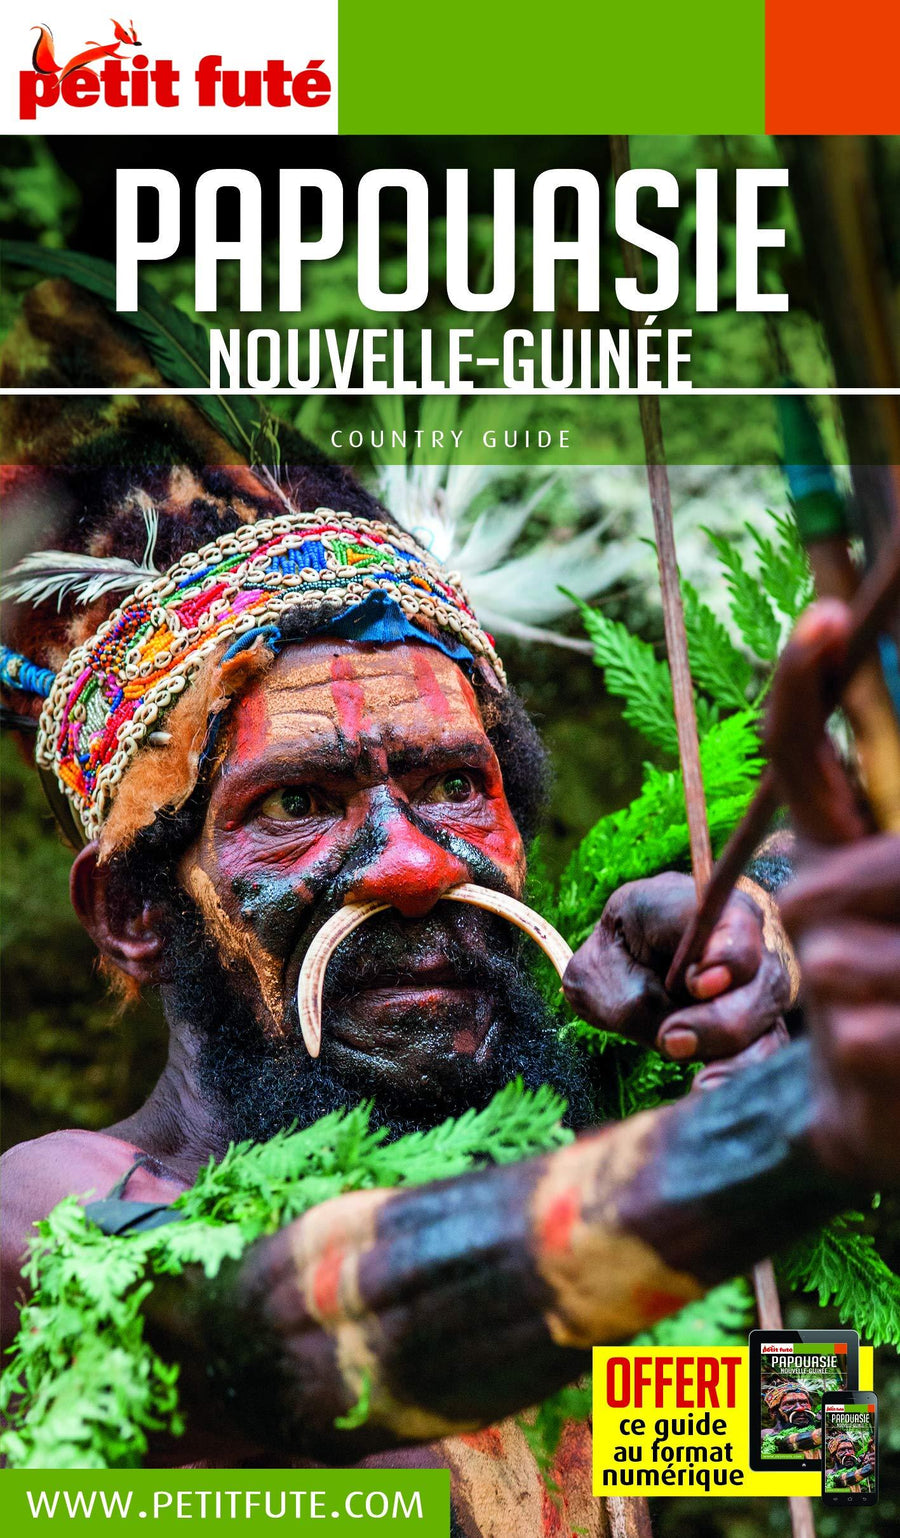 Guide de voyage - Papouasie, Nouvelle Guinée 2019 | Petit Futé guide de voyage Petit Futé 